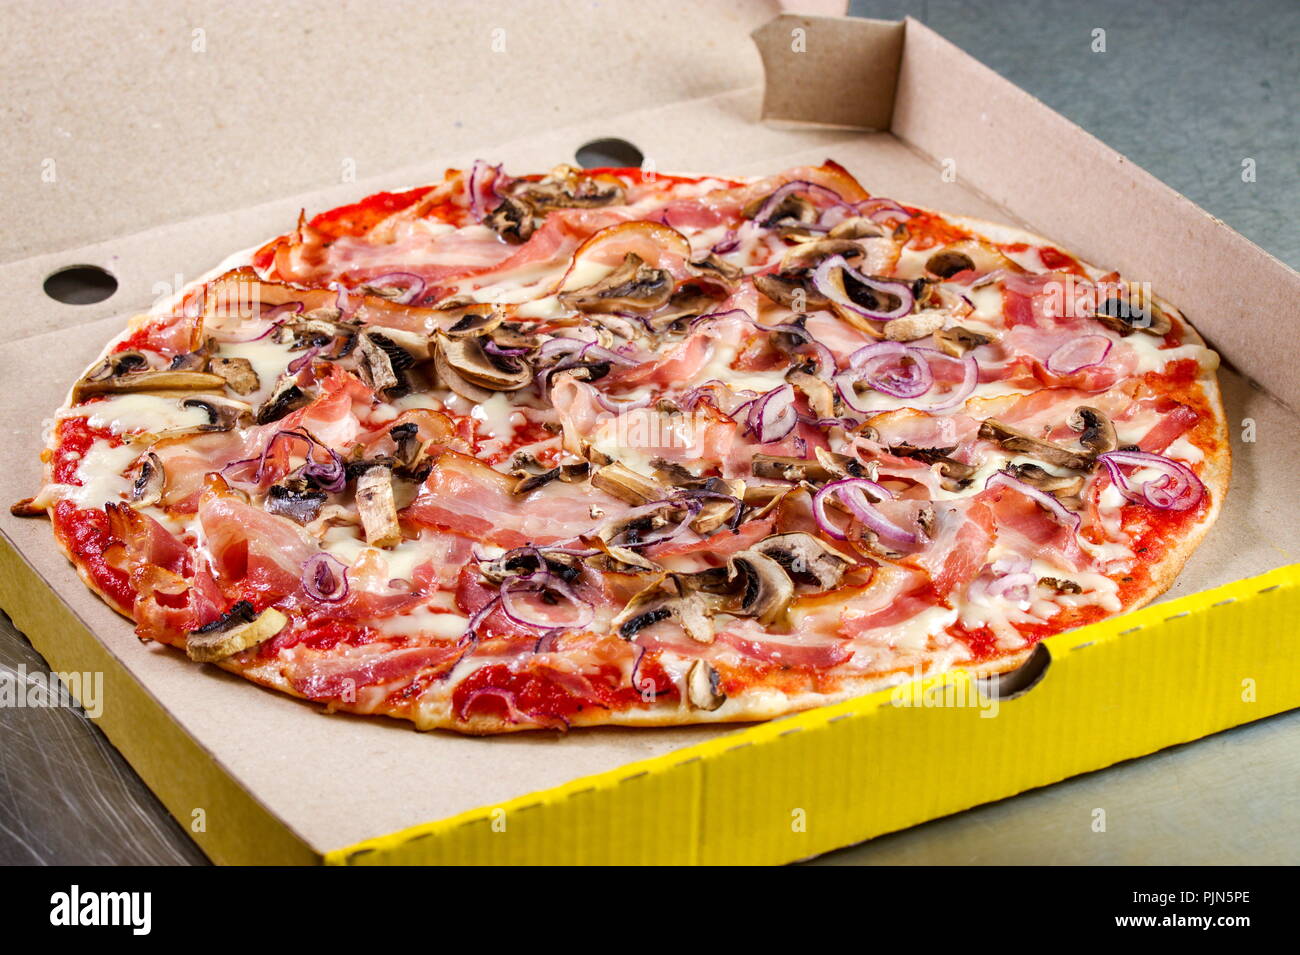 Pizza prosciutto crudo preparato e presentato in imballaggi di cartone Foto Stock